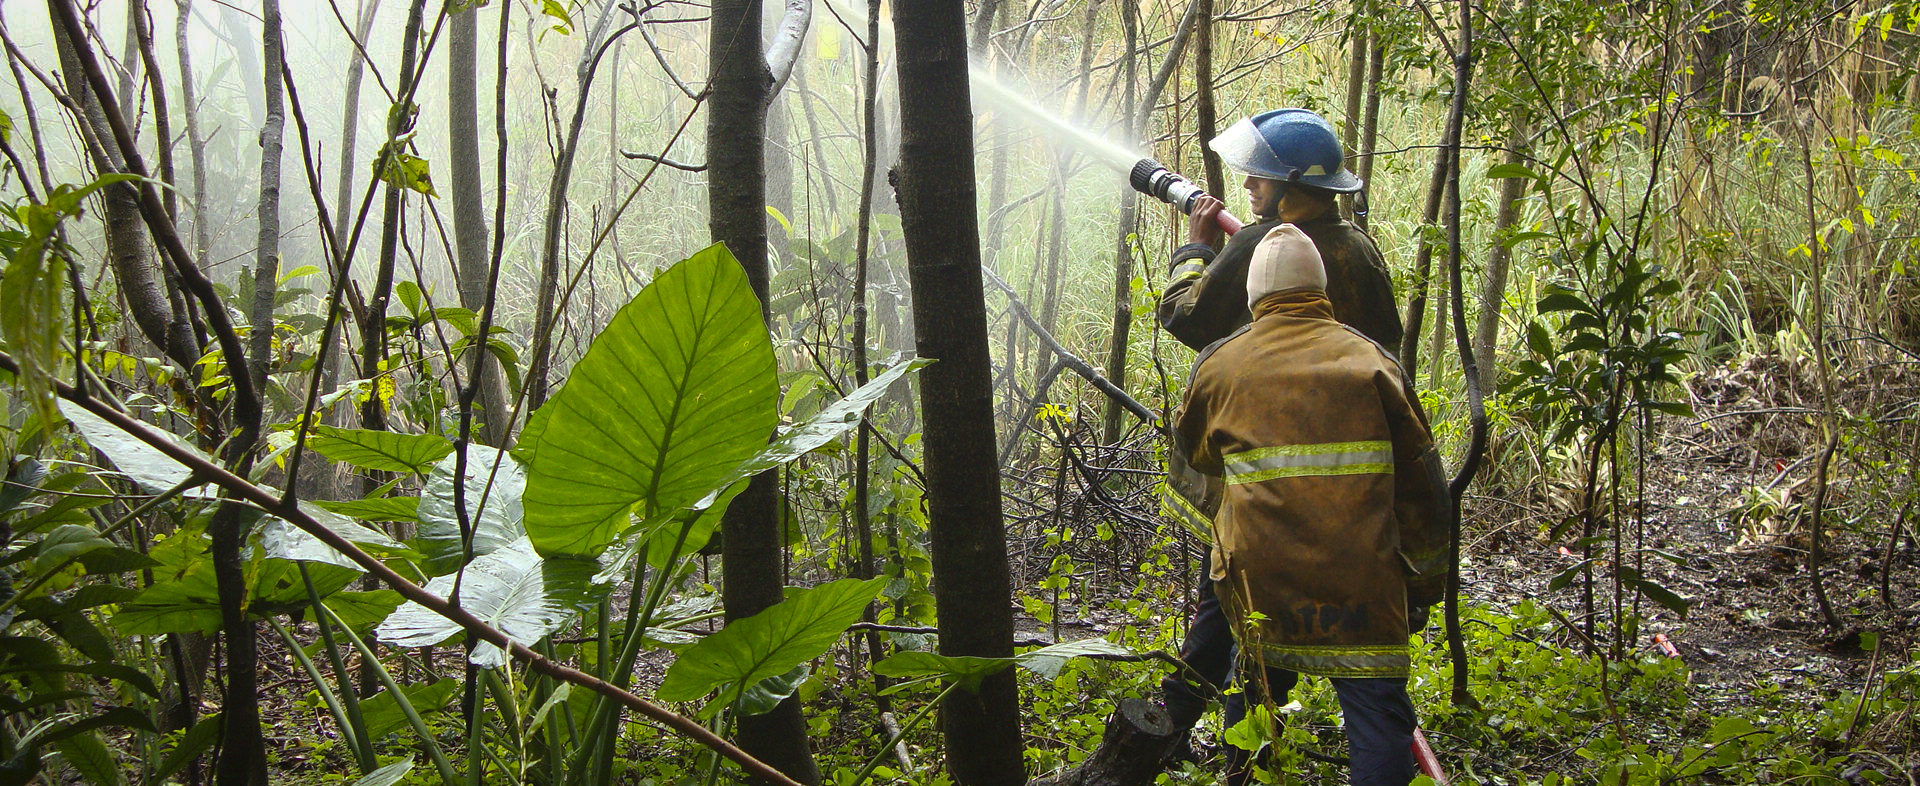 Se realizó un simulacro de incendio en la Reserva Ecológica